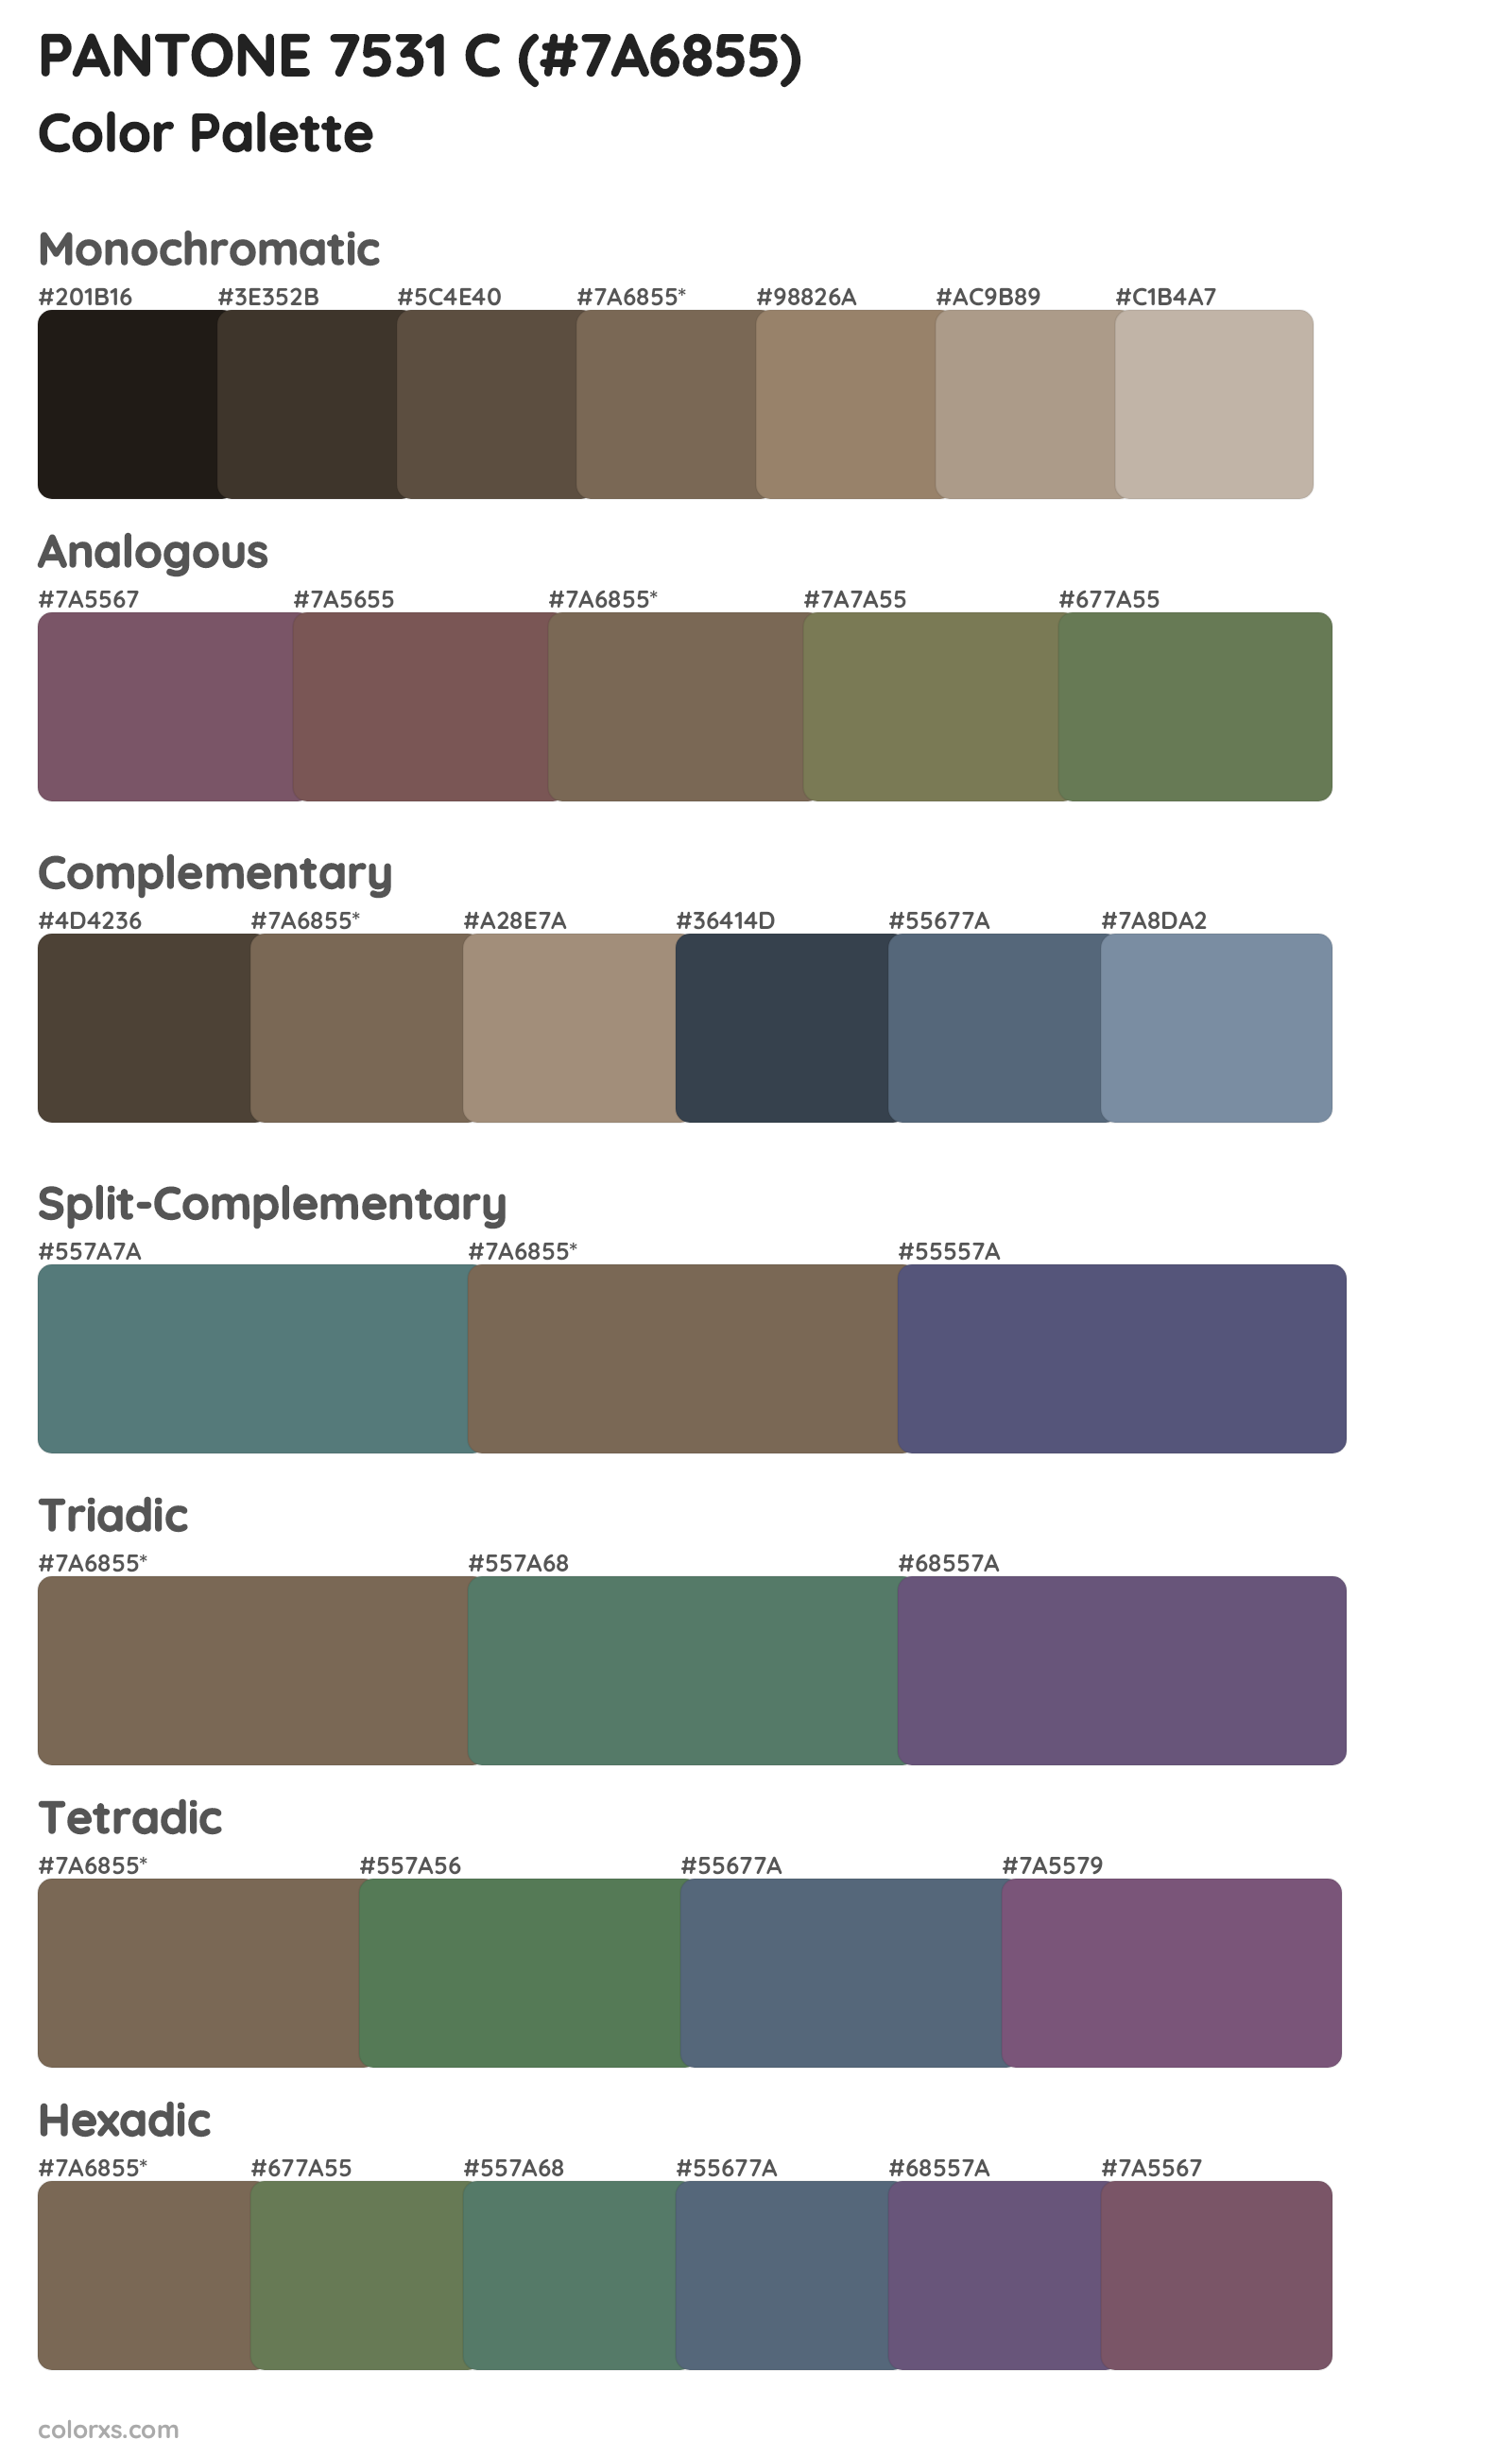 PANTONE 7531 C Color Scheme Palettes